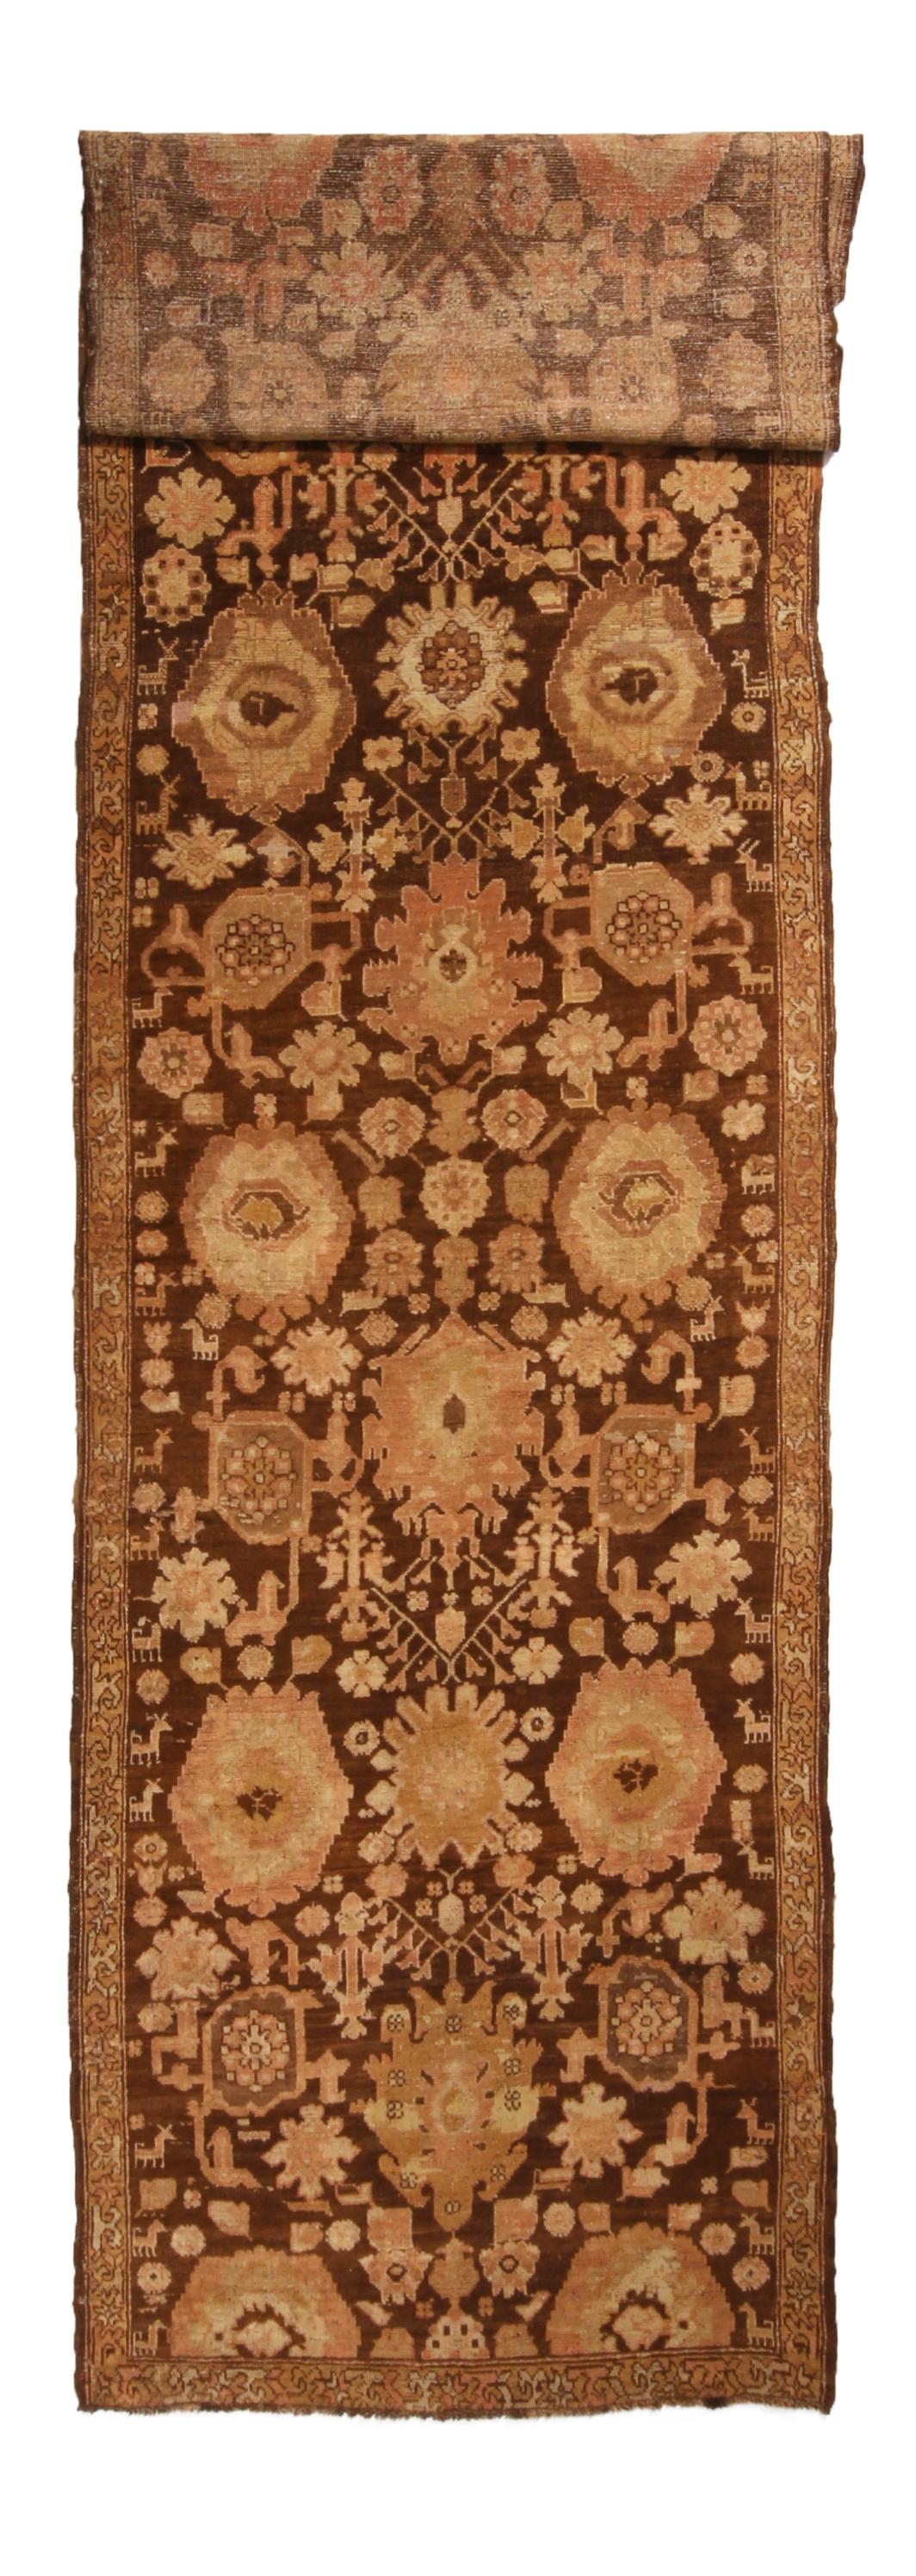 Originaire de Russie en 1910, cet antique tapis Karabagh présente une bordure unique d'une rare finesse, mettant en valeur une série géométrique-florale spacieuse et complémentaire. Noué à la main dans une laine lumineuse de haute qualité, ce fond